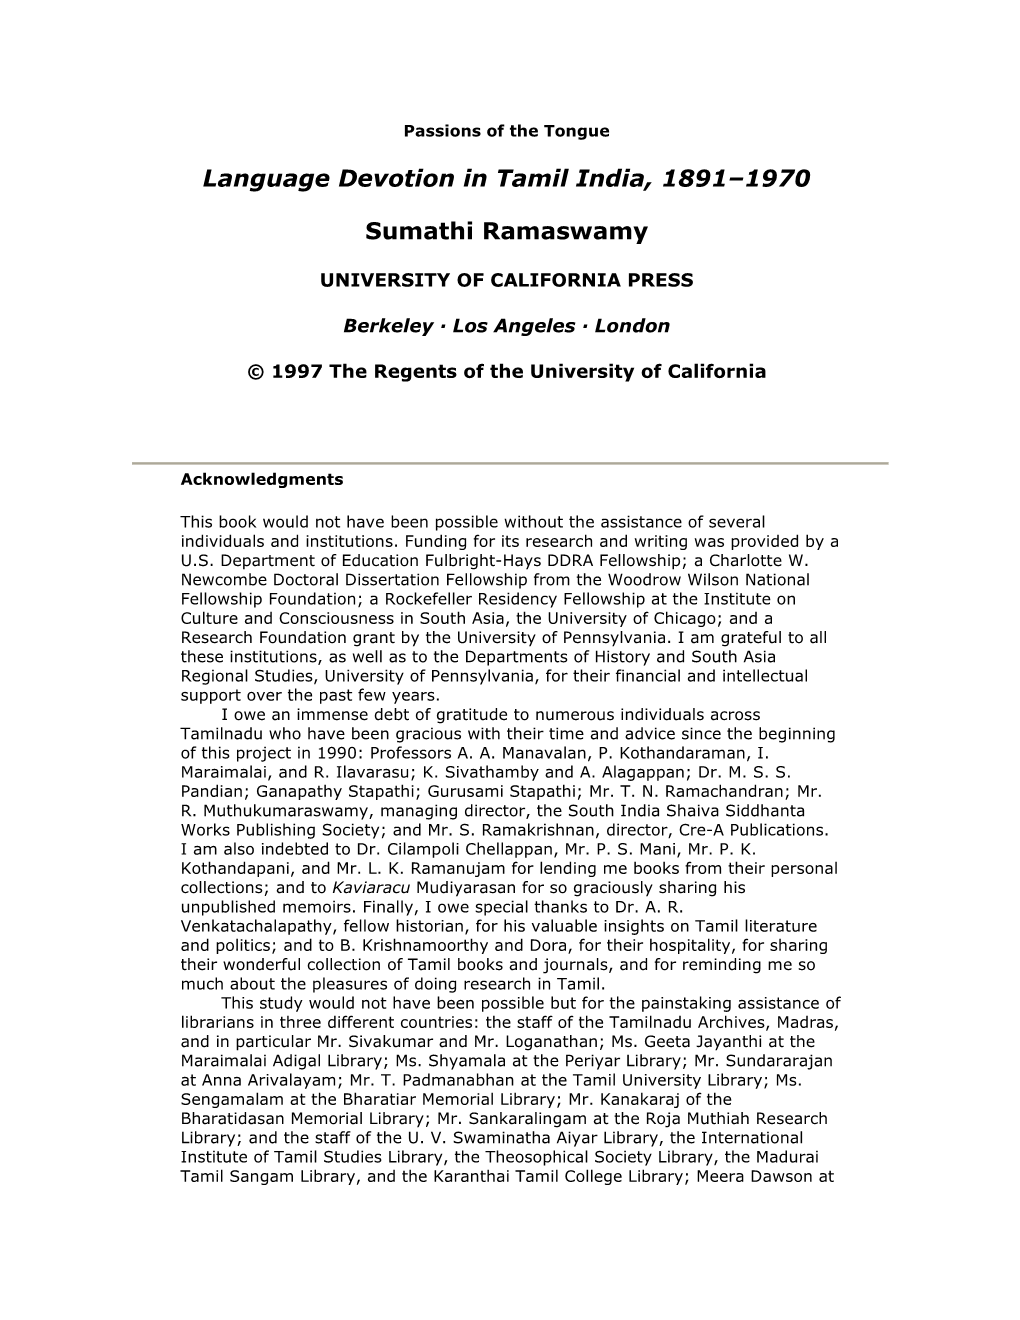 Language Devotion in Tamil India, 1891–1970 Sumathi Ramaswamy